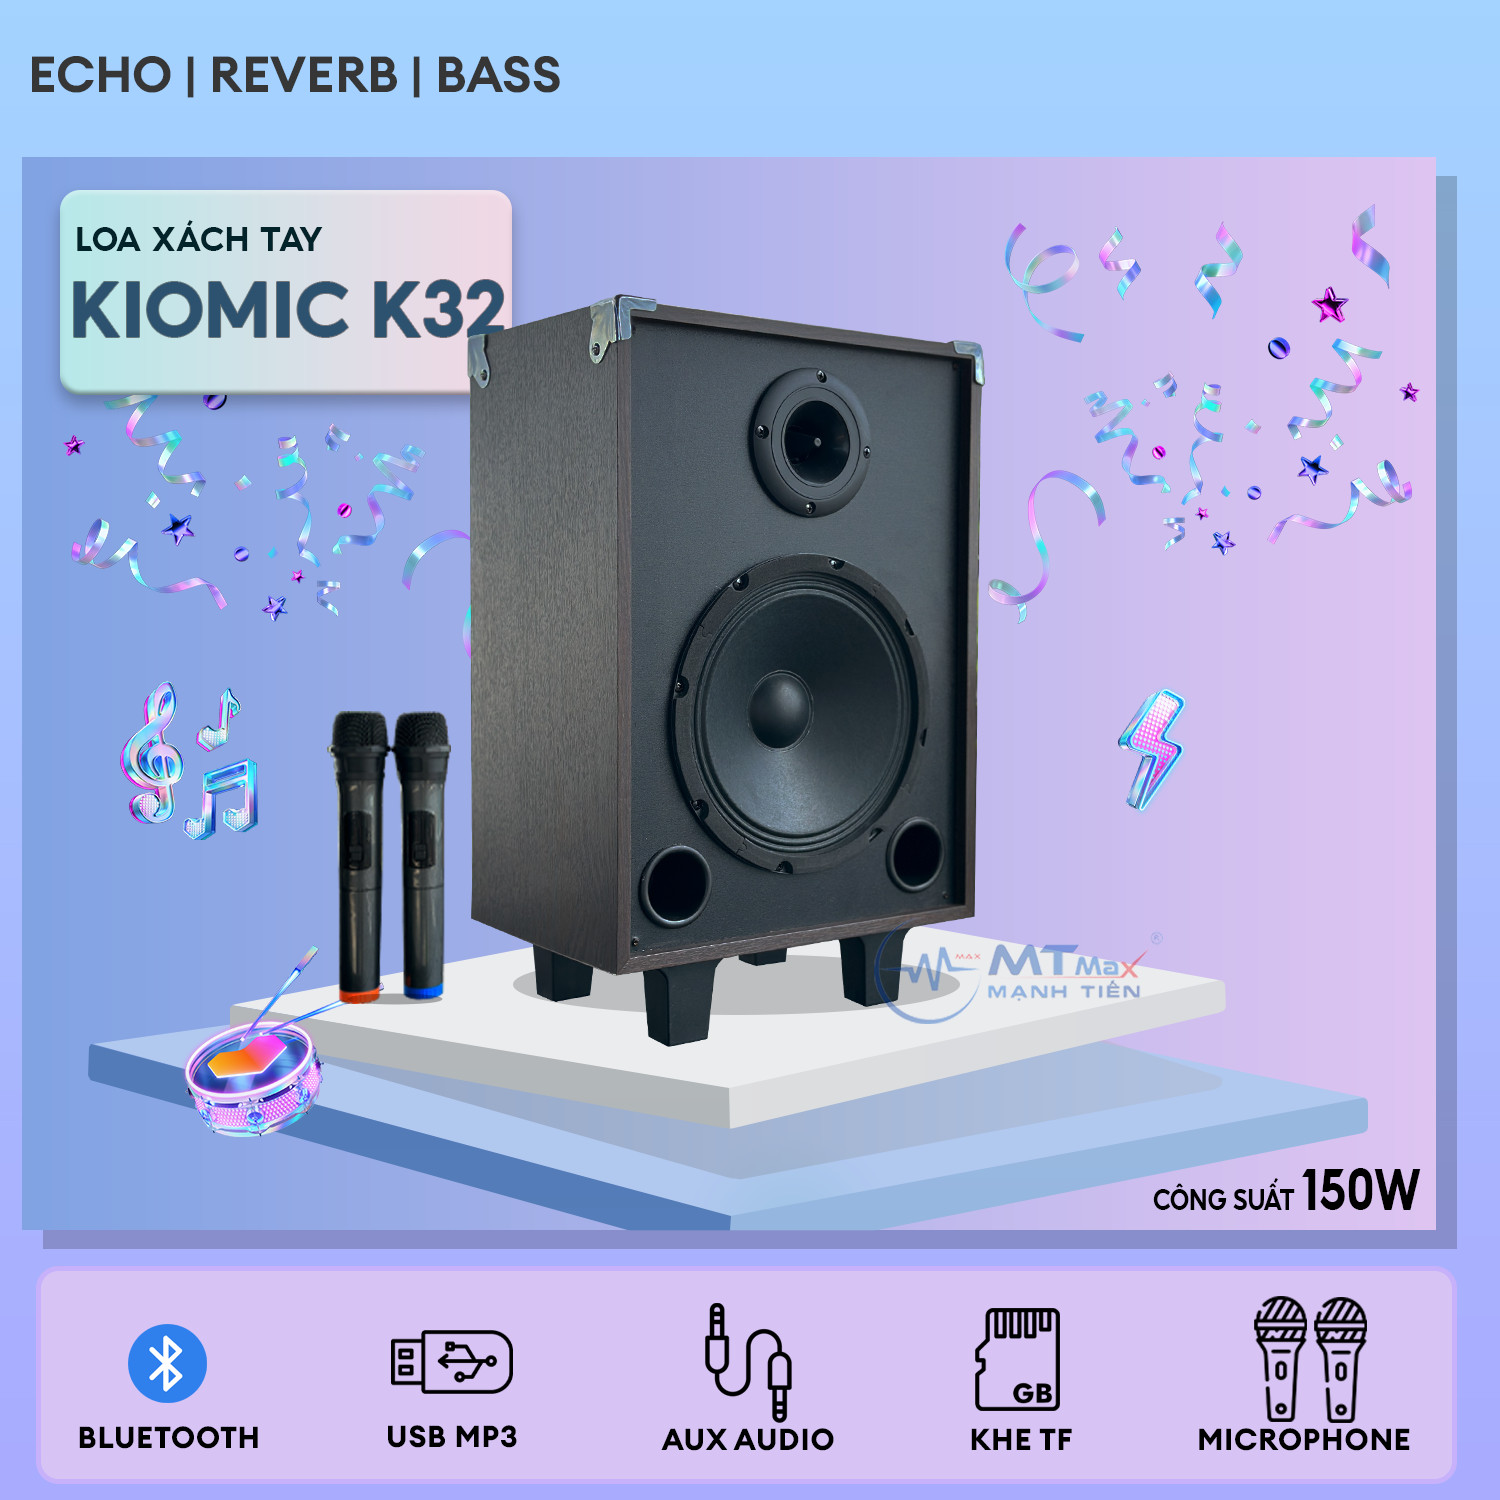 Loa Karaoke Kiomic K32 - Loa Xách Tay Bluetooth Cao Cấp Giá Rẻ Bass 20Cm Chất Âm Mạnh Mẽ Uy Lực Tặng Kèm 2 Micro Không Dây và Kẹp Điện Thoại L7 Bảo Hành 6 Tháng Hàng chính hãng